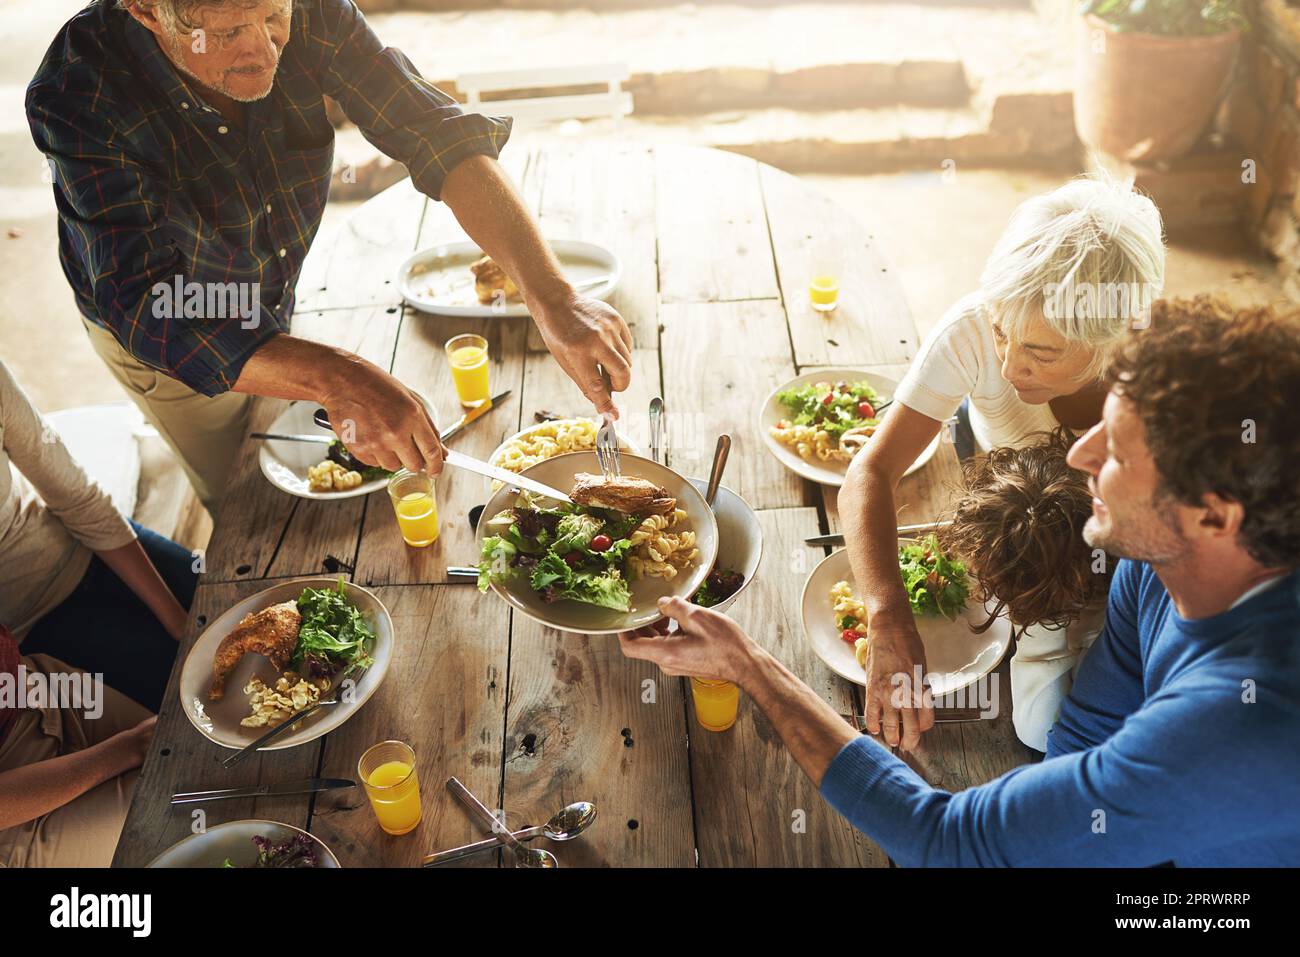 Cmon tutti, piatto su. Inquadratura ad alta angolazione di una famiglia per pranzare insieme all'aperto. Foto Stock